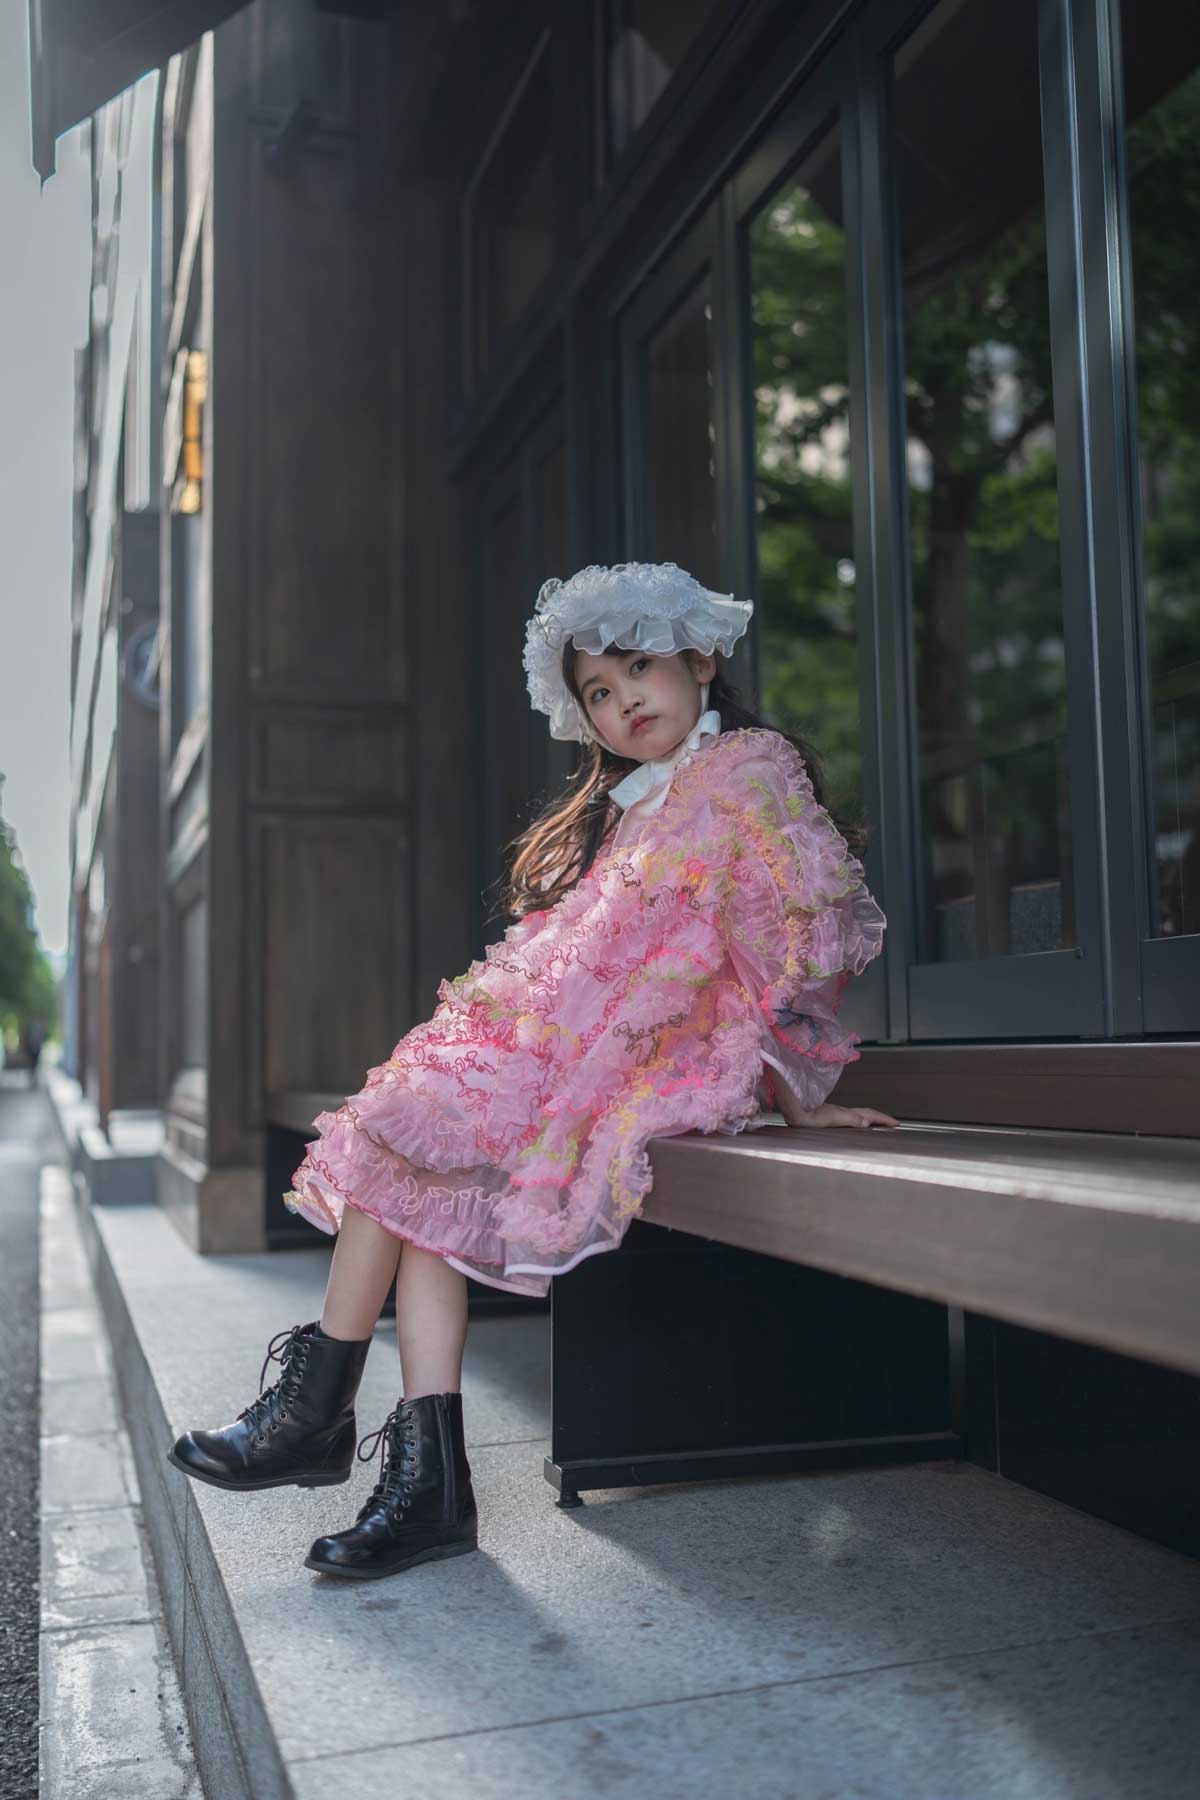 SAKURAのエッジングチュールドレス | 子供のおしゃれなレンタル衣装 - heartmelt | キッズドレス